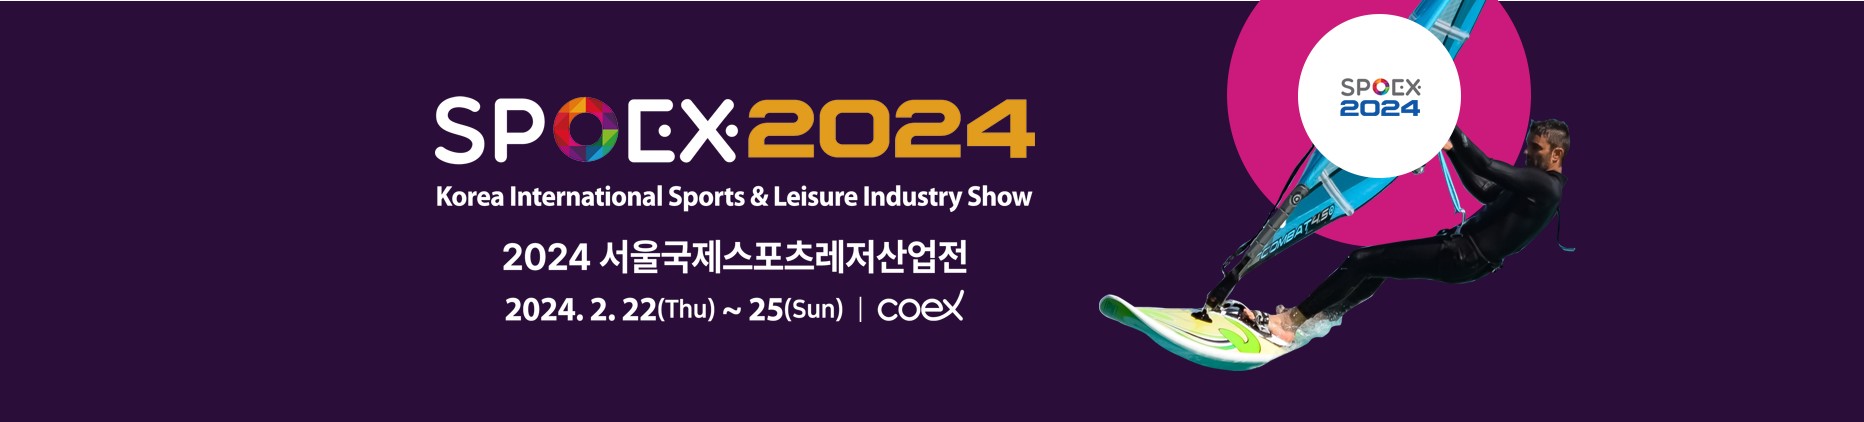 SPOEX 2024 서울국제스포츠레저산업전